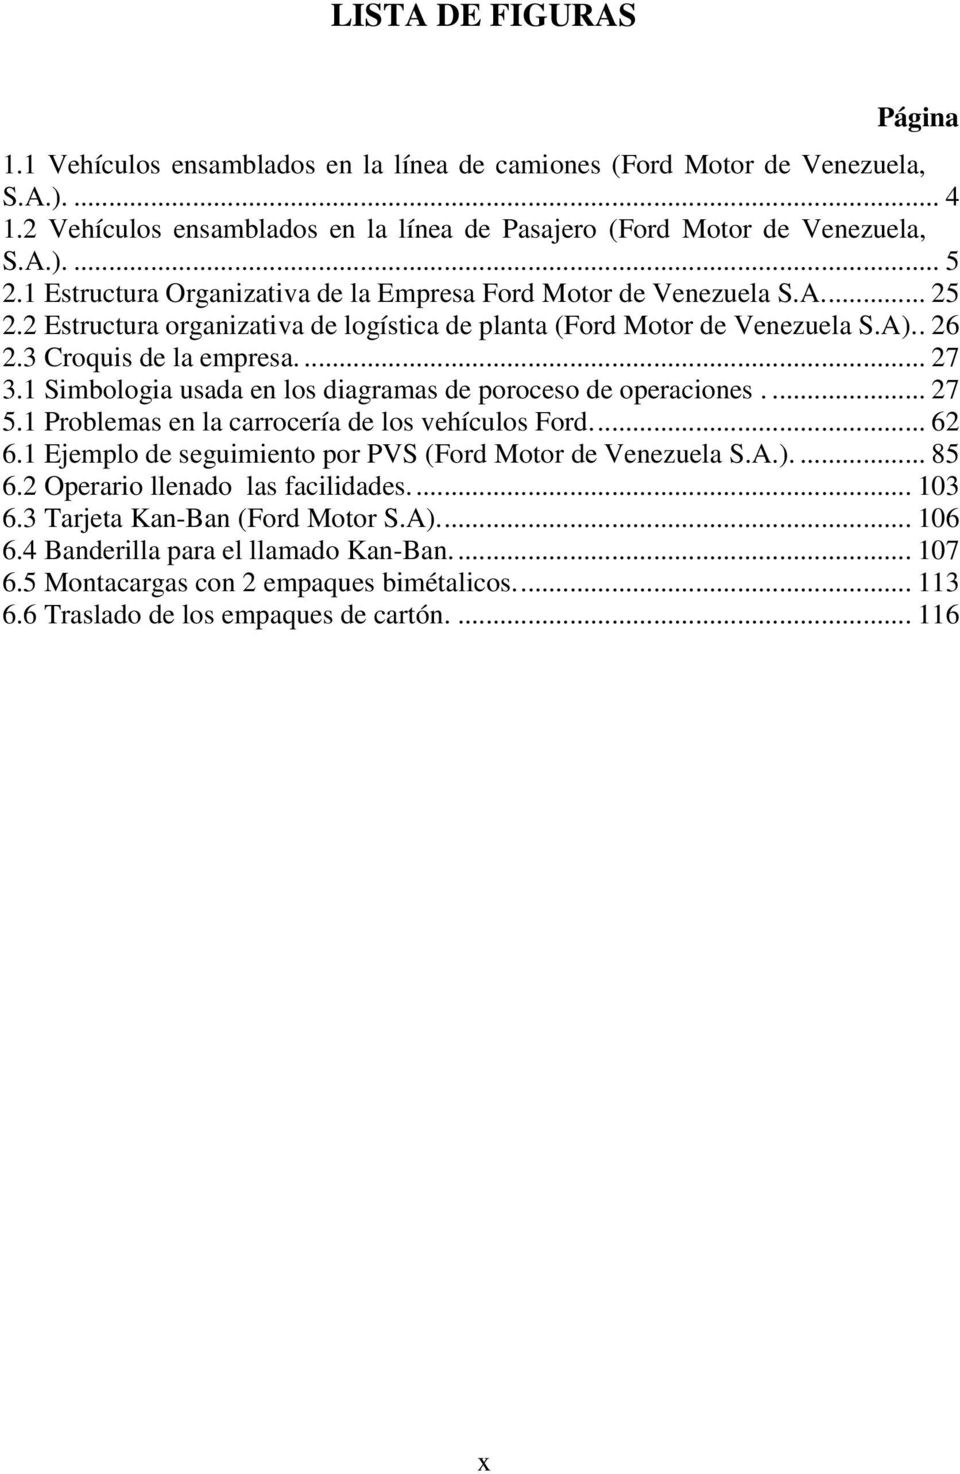 1 Simbologia usada en los diagramas de poroceso de operaciones.... 27 5.1 Problemas en la carrocería de los vehículos Ford.... 62 6.1 Ejemplo de seguimiento por PVS (Ford Motor de Venezuela S.A.).